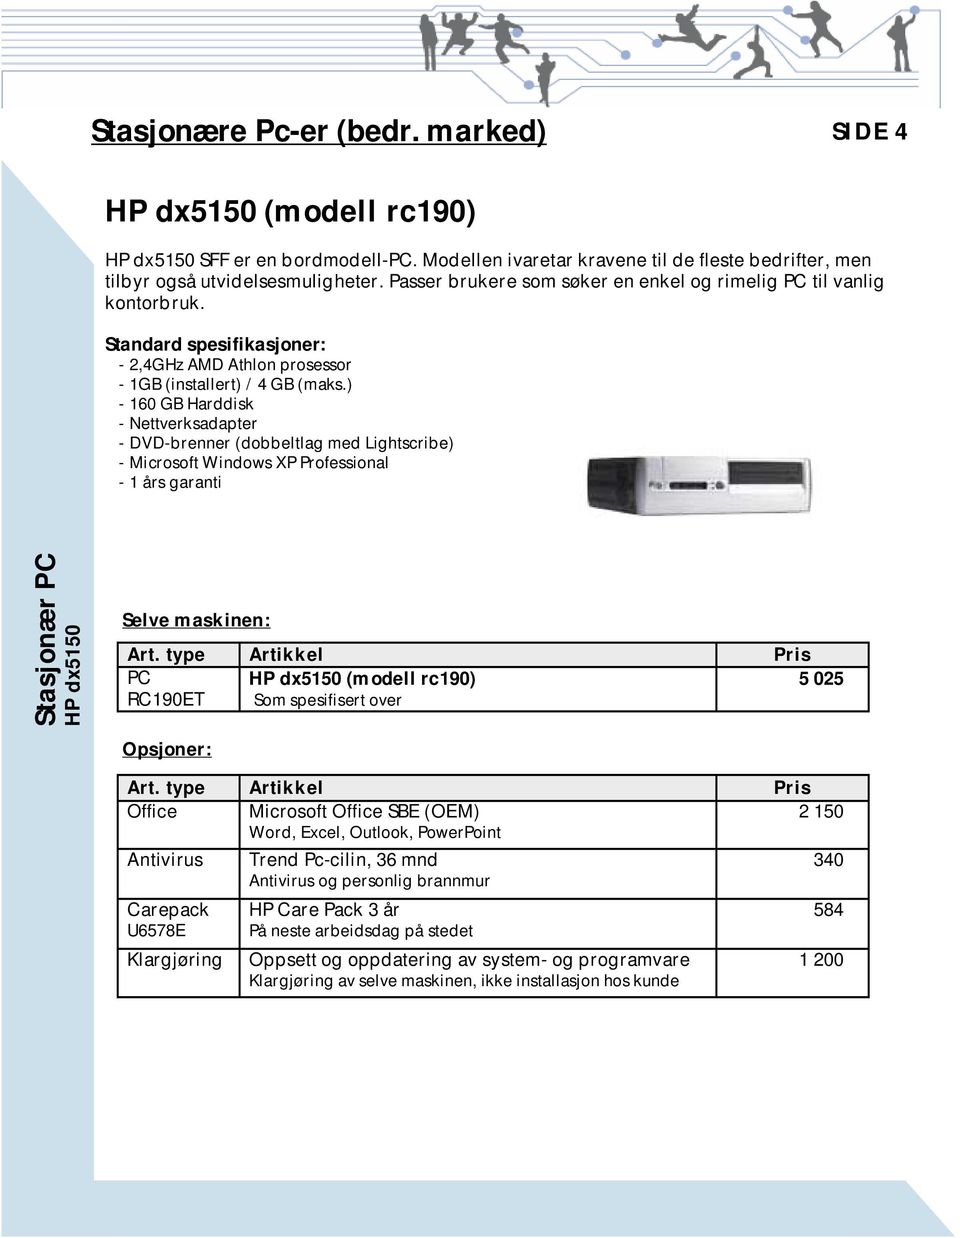 ) - 160 GB Harddisk - Nettverksadapter - DVD-brenner (dobbeltlag med Lightscribe) - Microsoft Windows XP Professional - 1 års garanti Stasjonær PC HP dx5150 Selve maskinen: PC HP dx5150 (modell